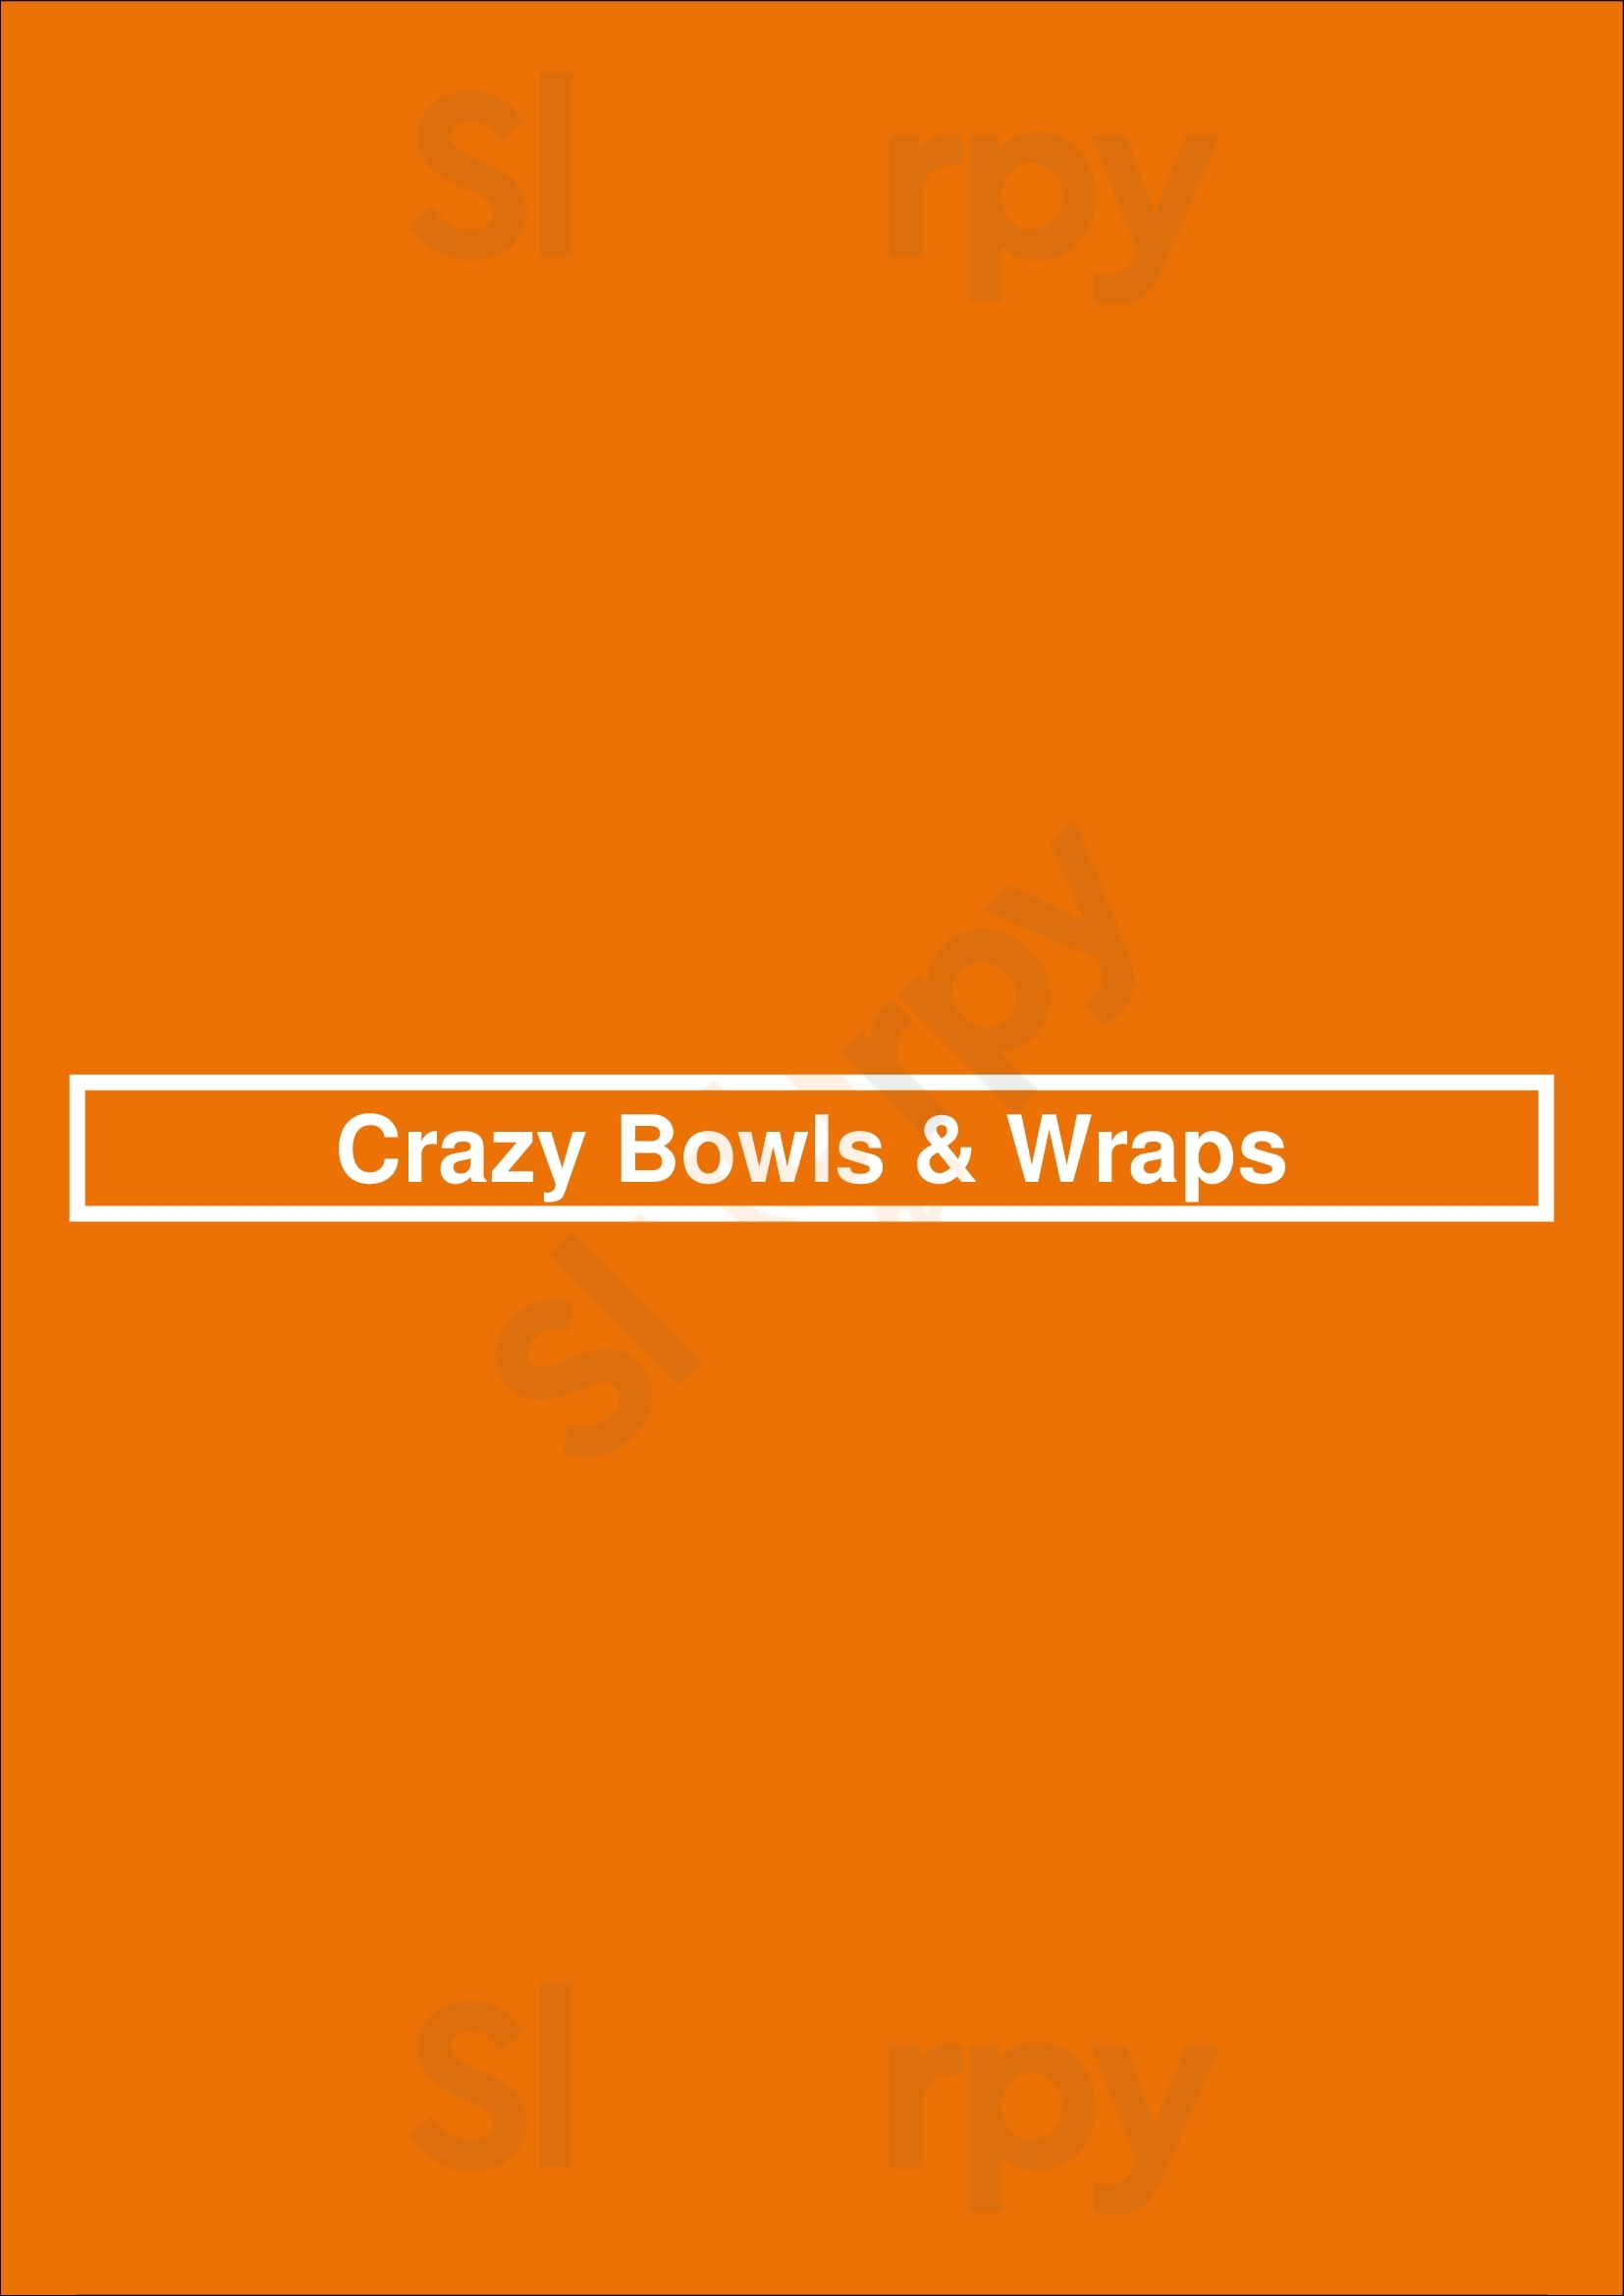 Crazy Bowls & Wraps Saint Louis Menu - 1